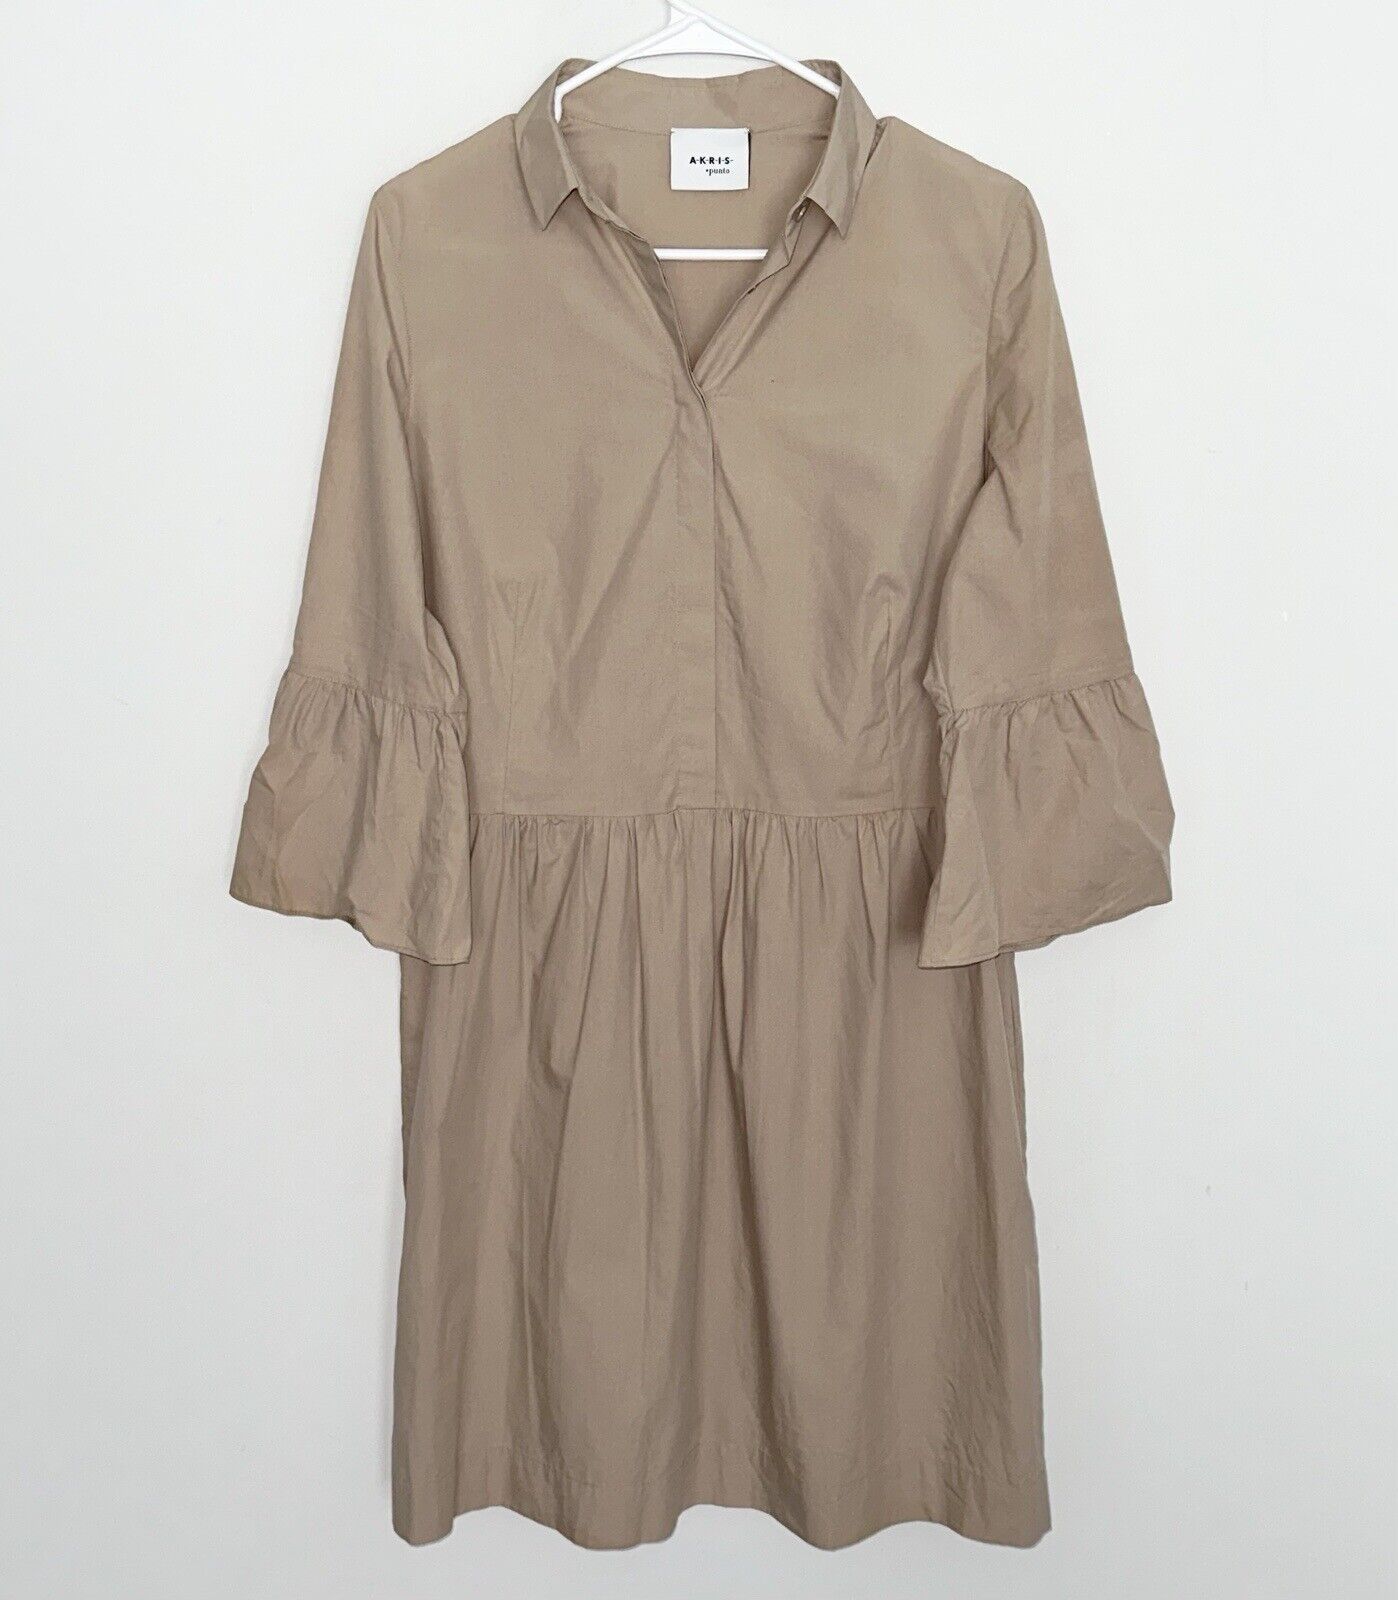 AKRIS PUNTO Shirt Dress Lightweight Cotton 3/4 Sleeve Knee Length Beige Tan 10